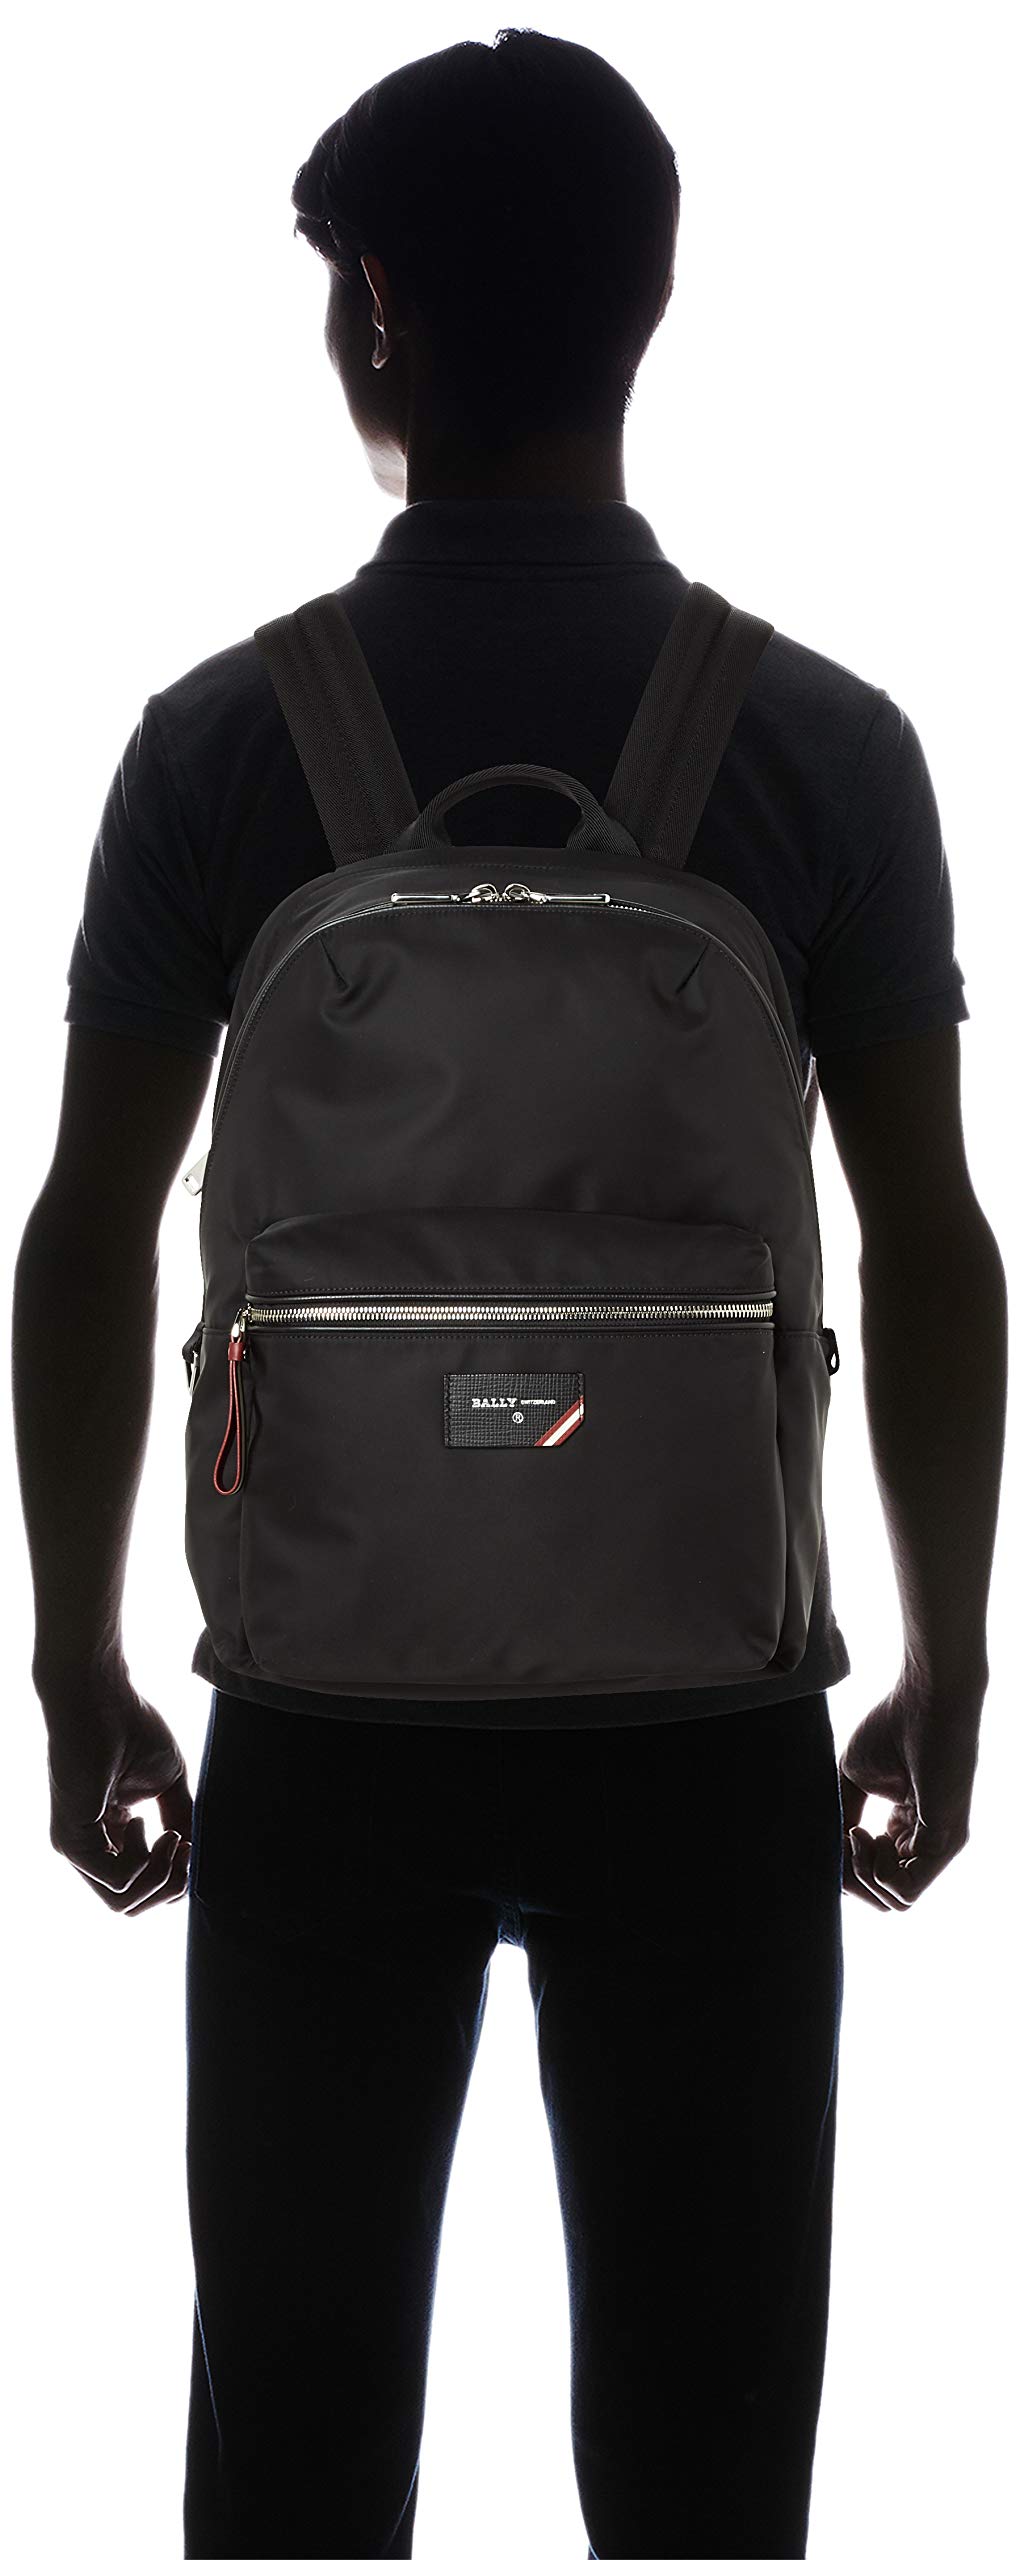 BALLY(バリー) Men's Backpack, Black (Black 19-3911tcx)